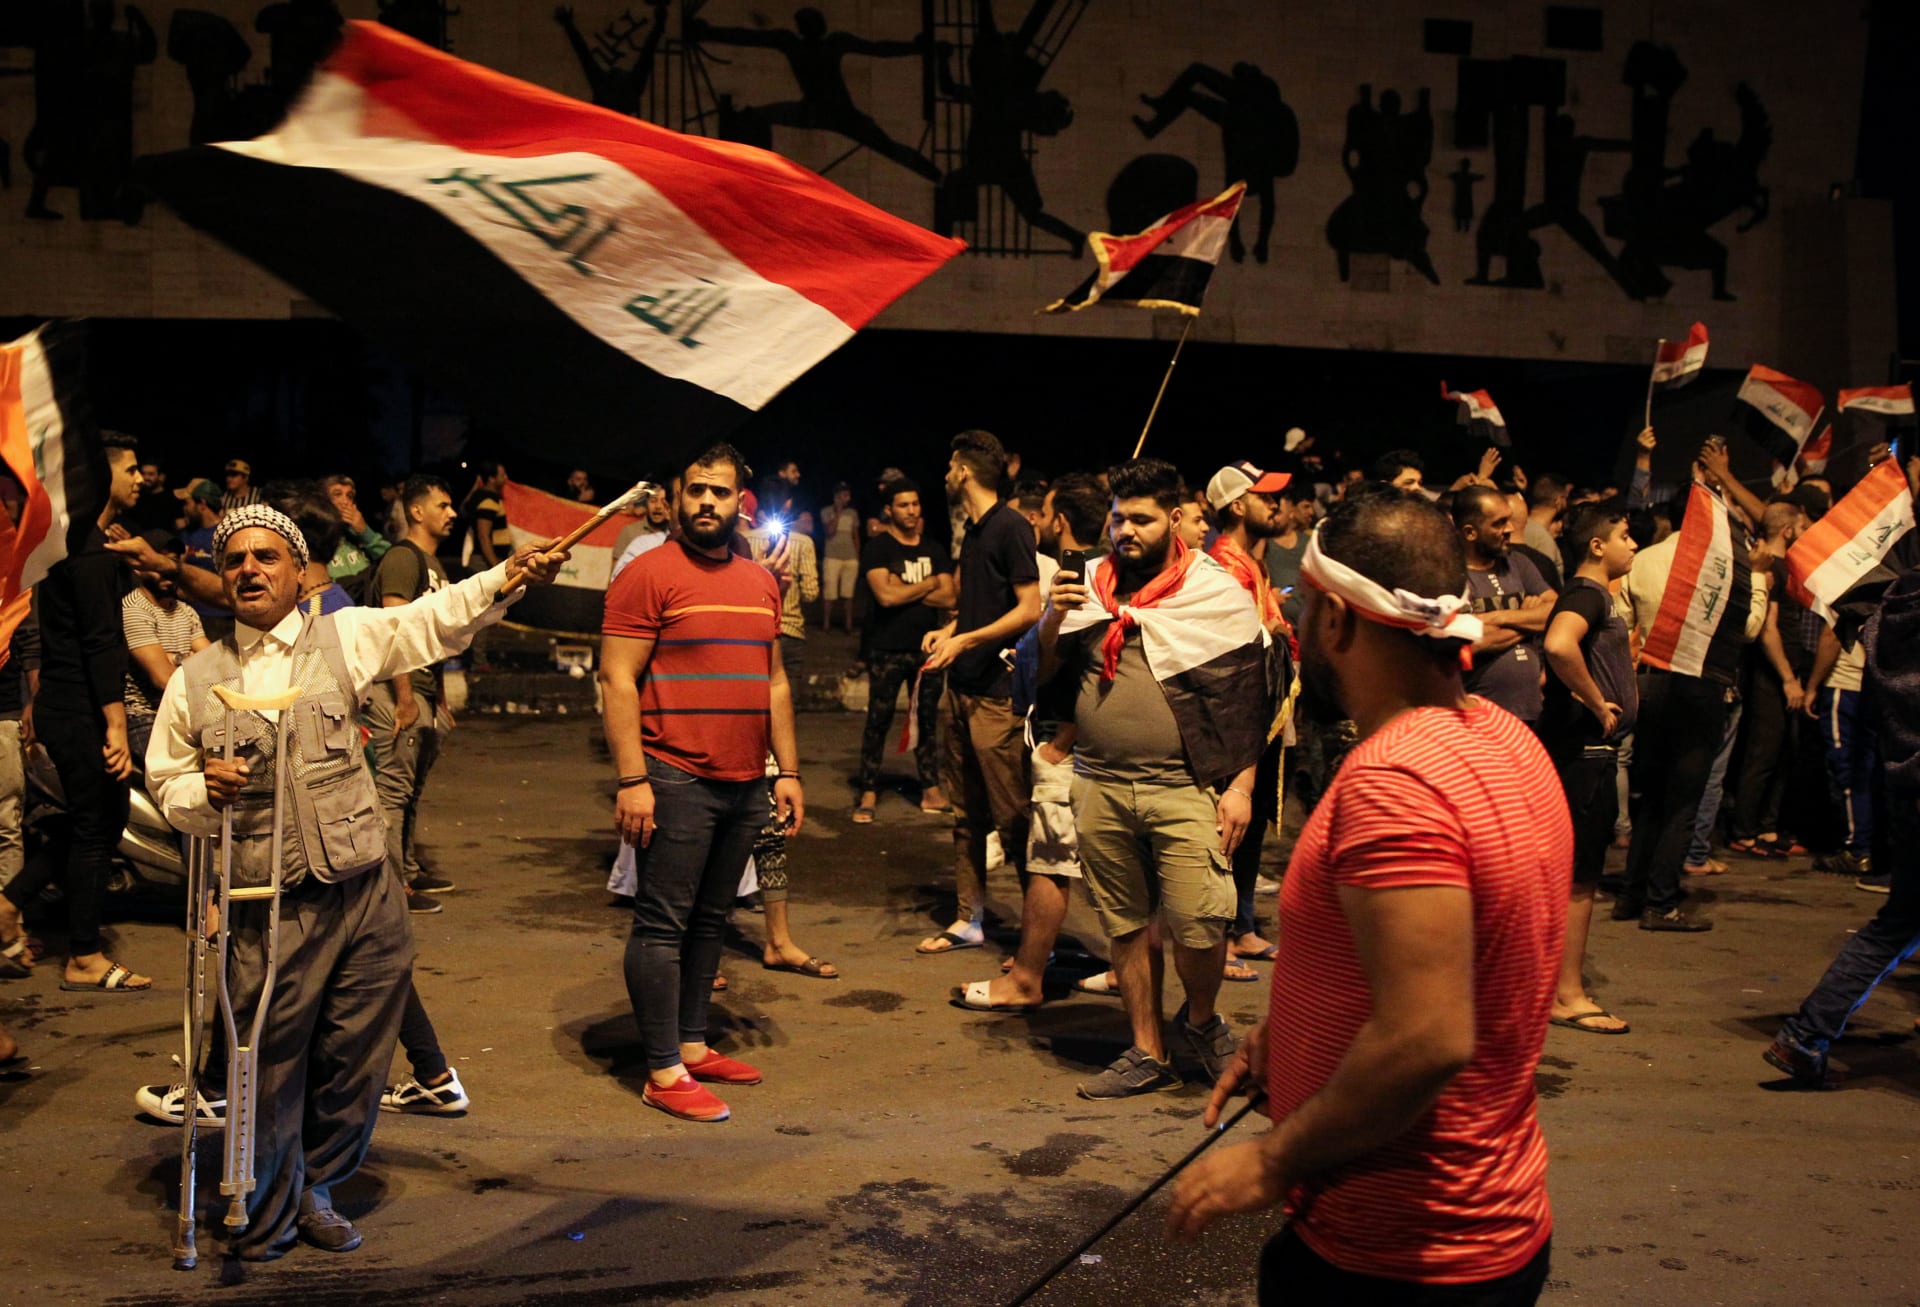 أحداث ساحة التحرير.. الجيش العراقي يعلن فتح تحقيق ويرفض "الاستفزاز"